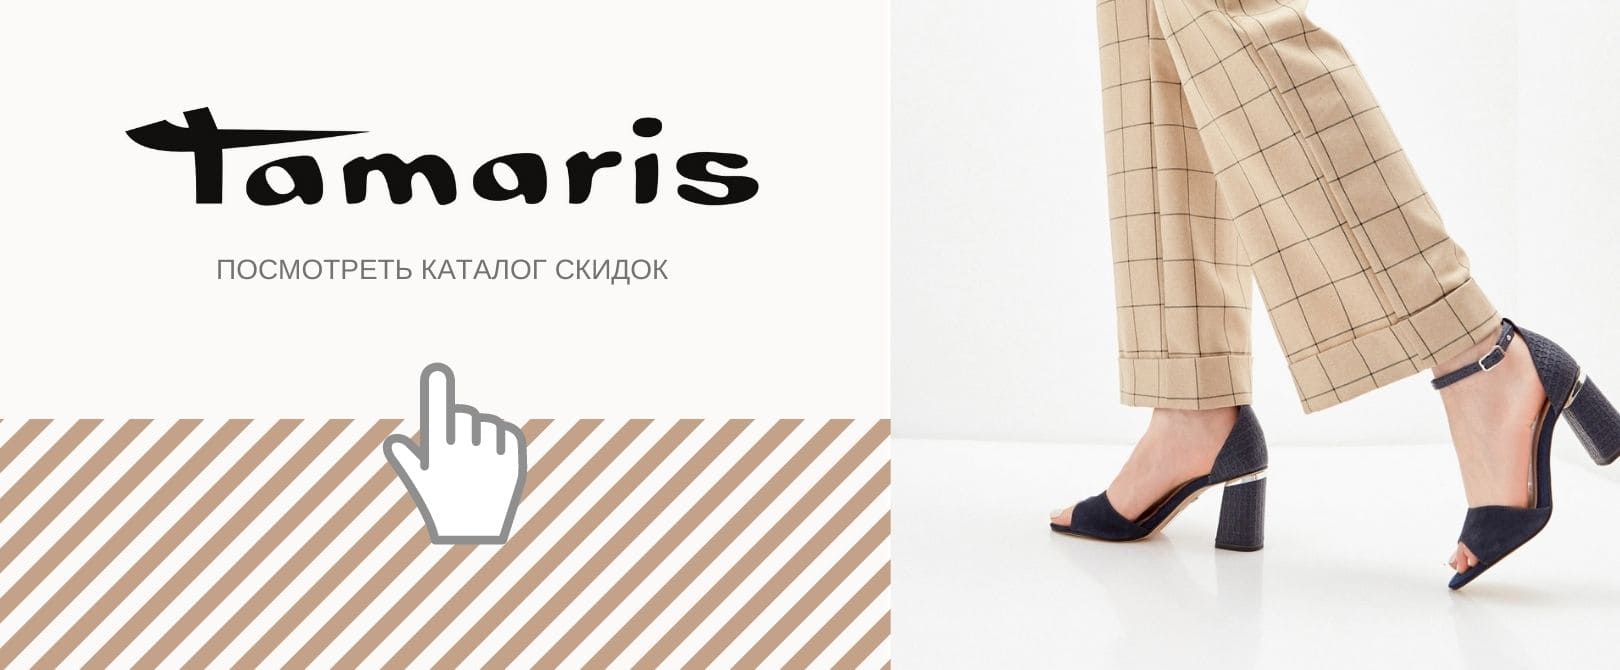 ТАМАРИС обувь - официальный сайт скидок